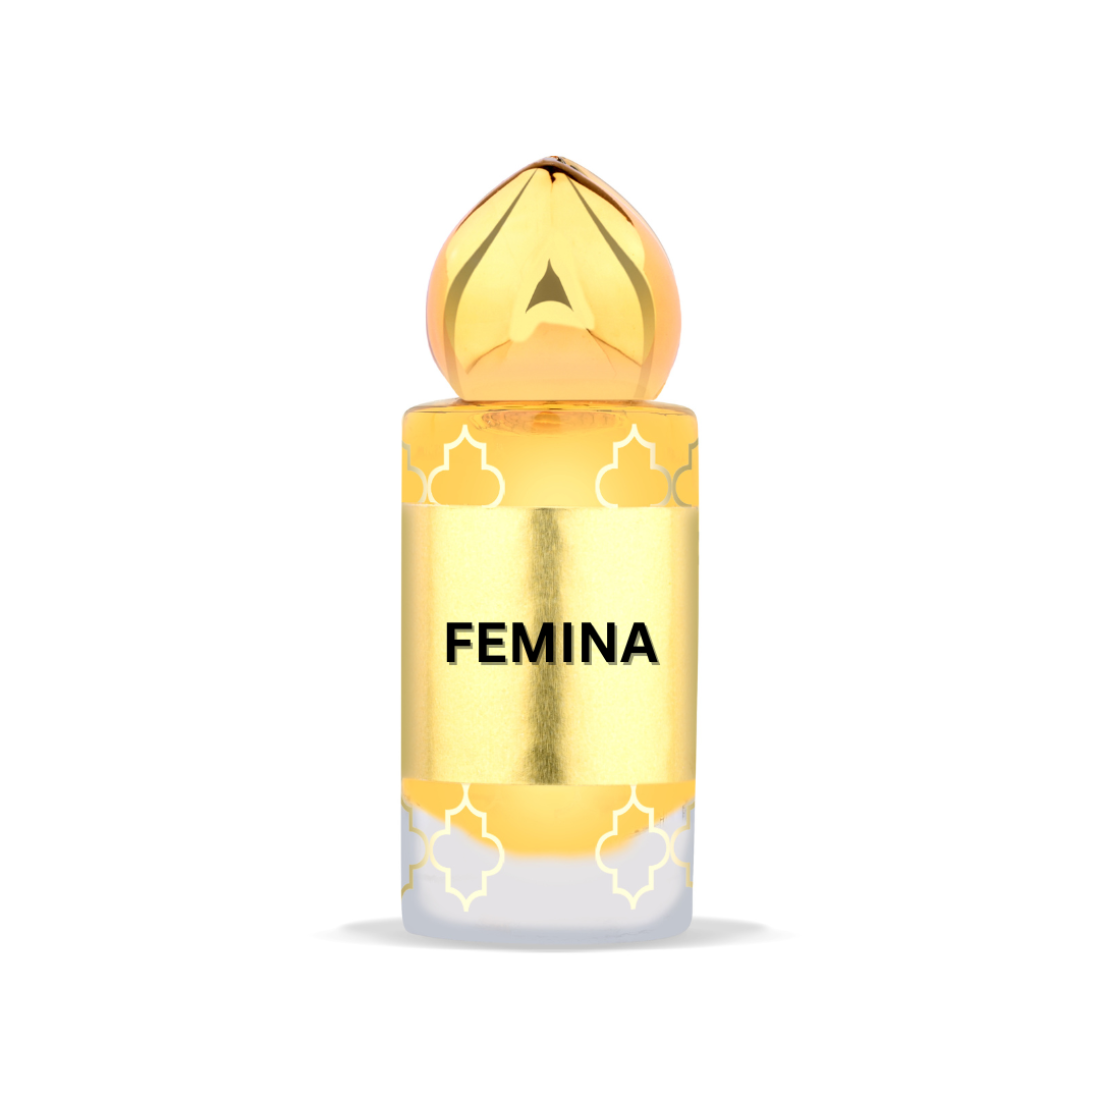 FEMINA Premium Attar